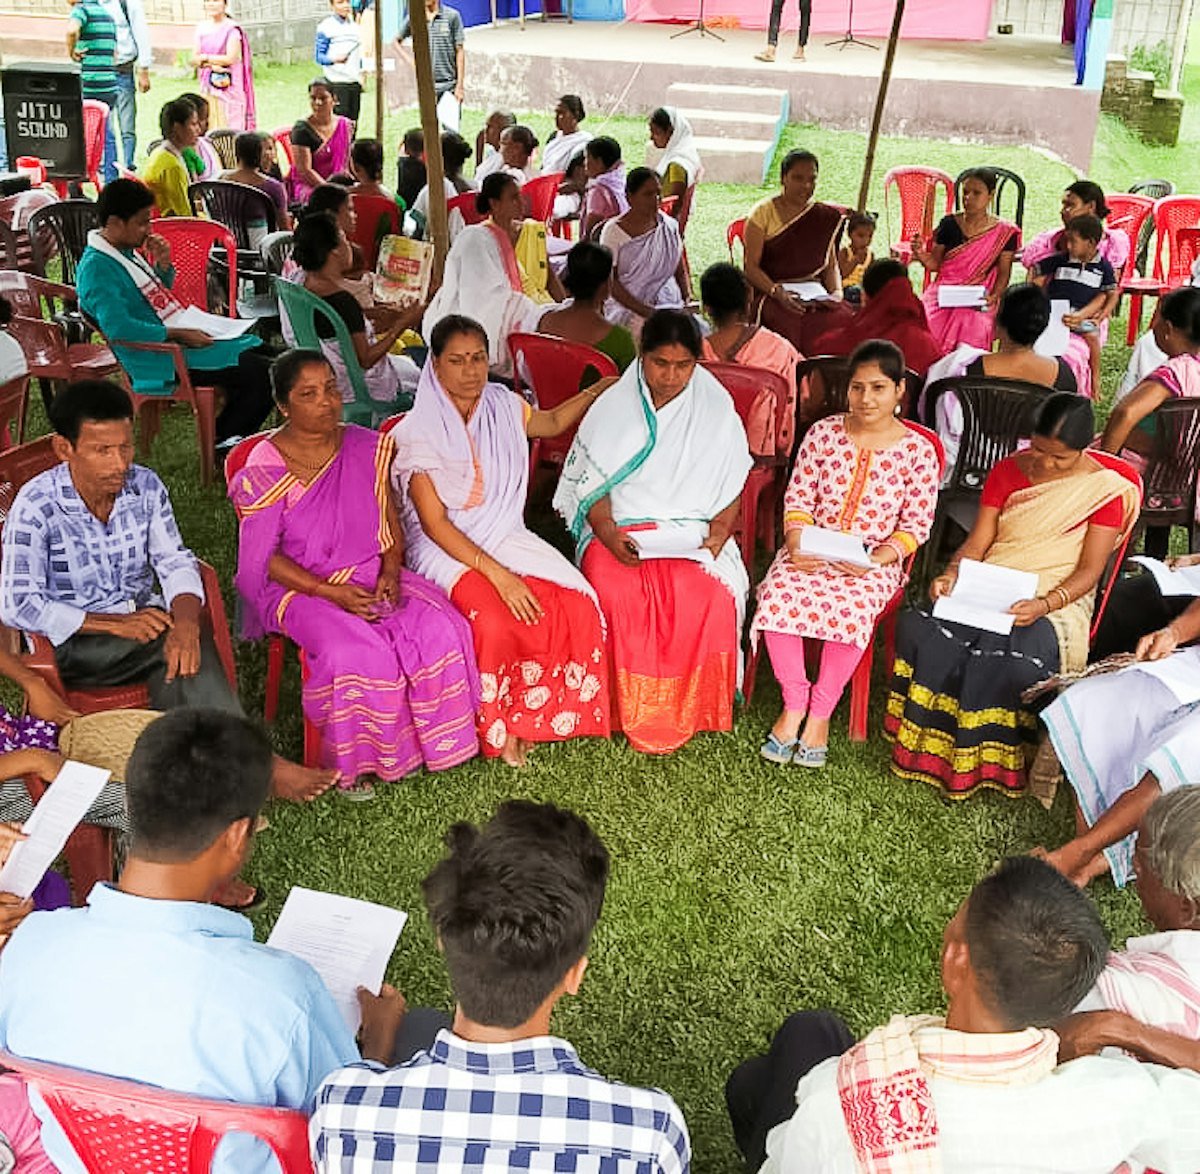 Des familles d’Assam, en Inde, se réunissent pour se concerter sur la manière de renforcer l’esprit d’adoration collective et de service dans leur communauté.